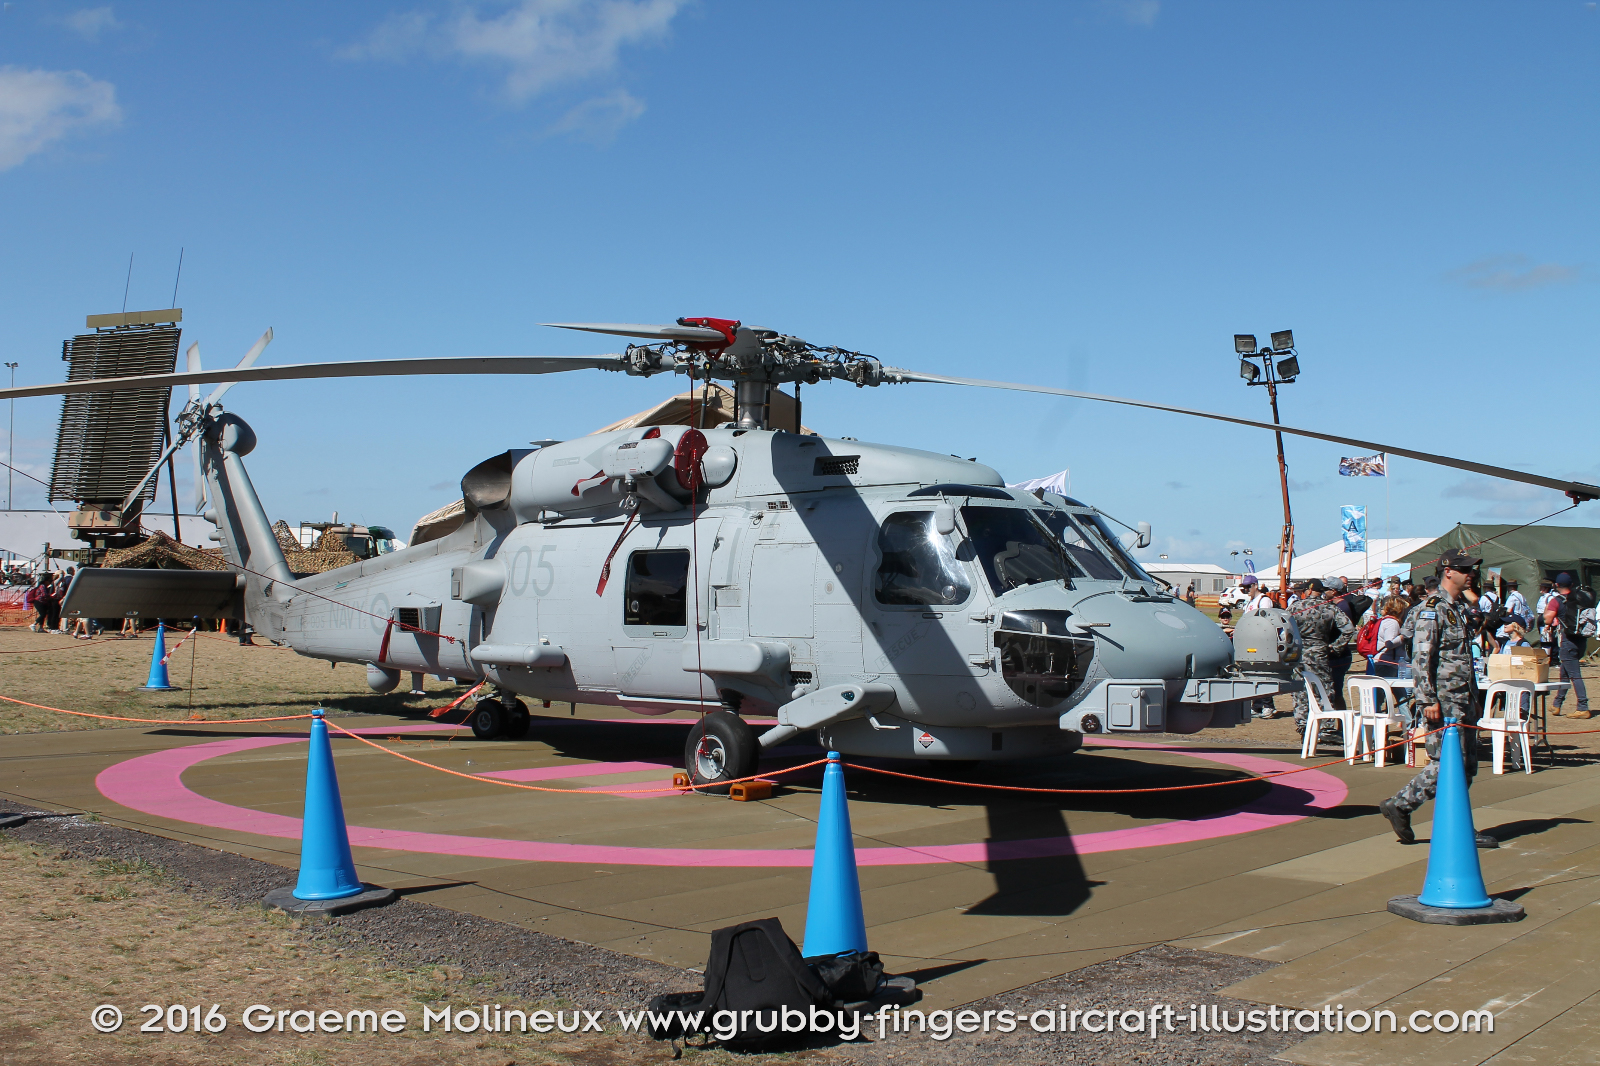 SIKORSKY_MH-60R_Seahawk_N48-005_Avalon_2015_02_GrubbyFingers